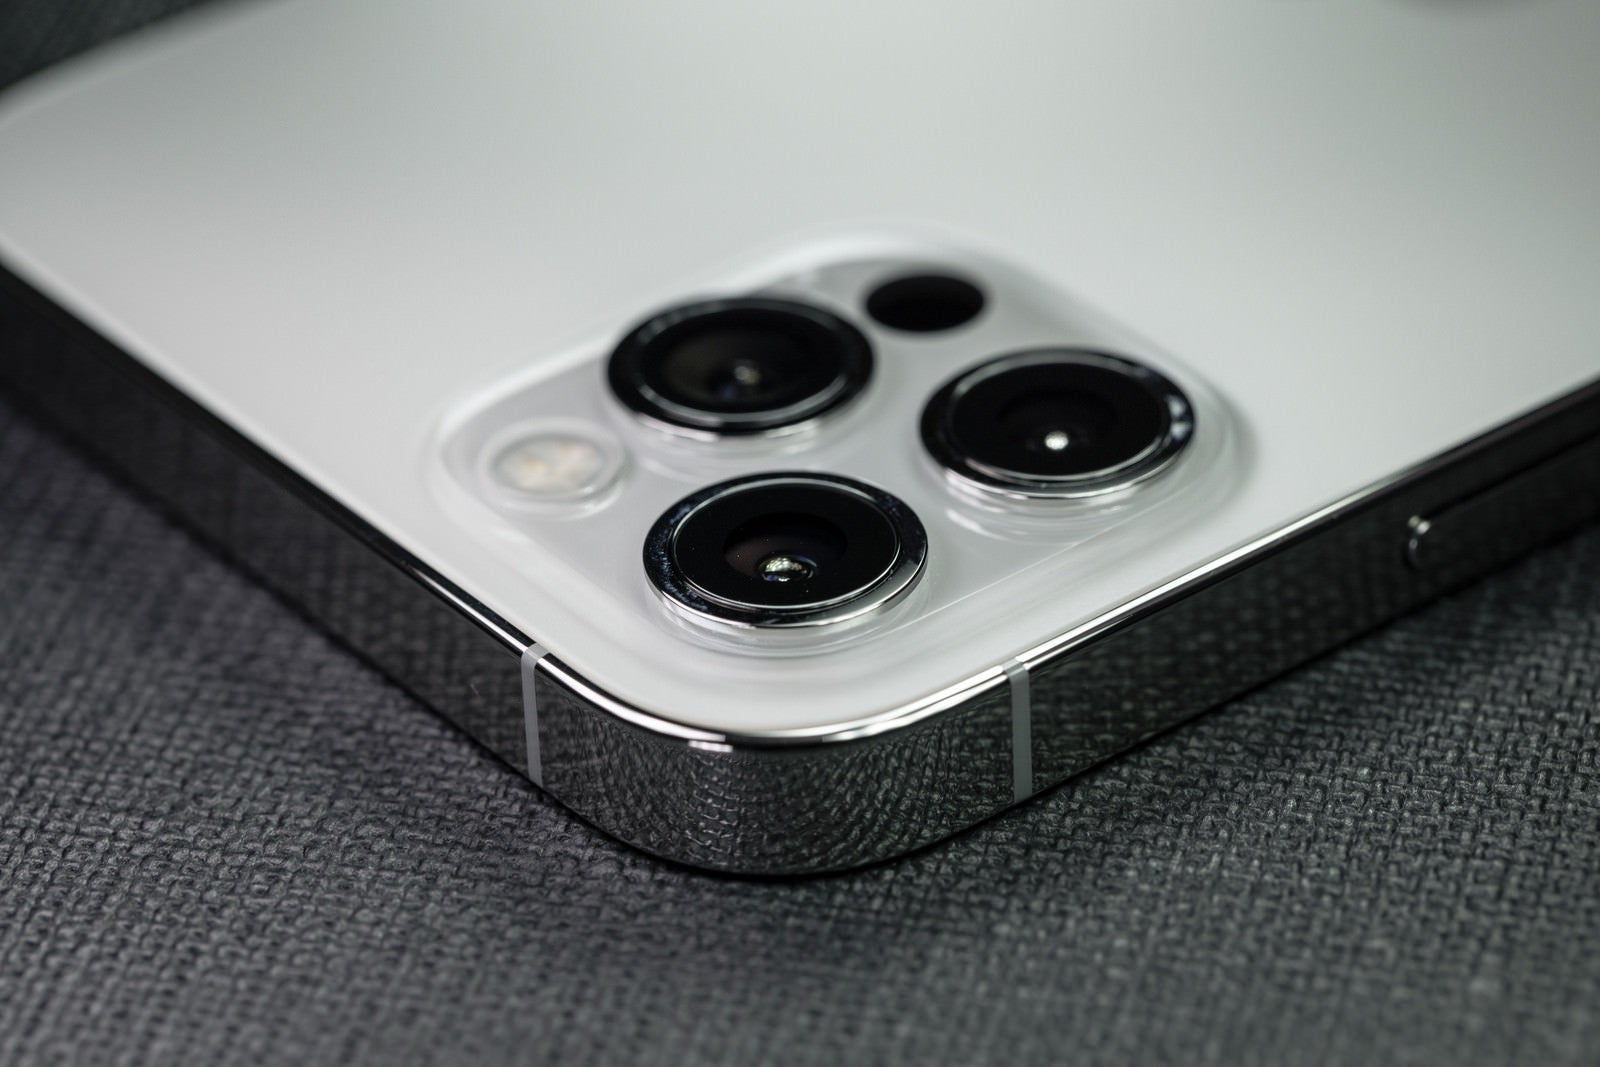 「リアカメラ側から見た iPhone 12 Pro の厚み」の写真